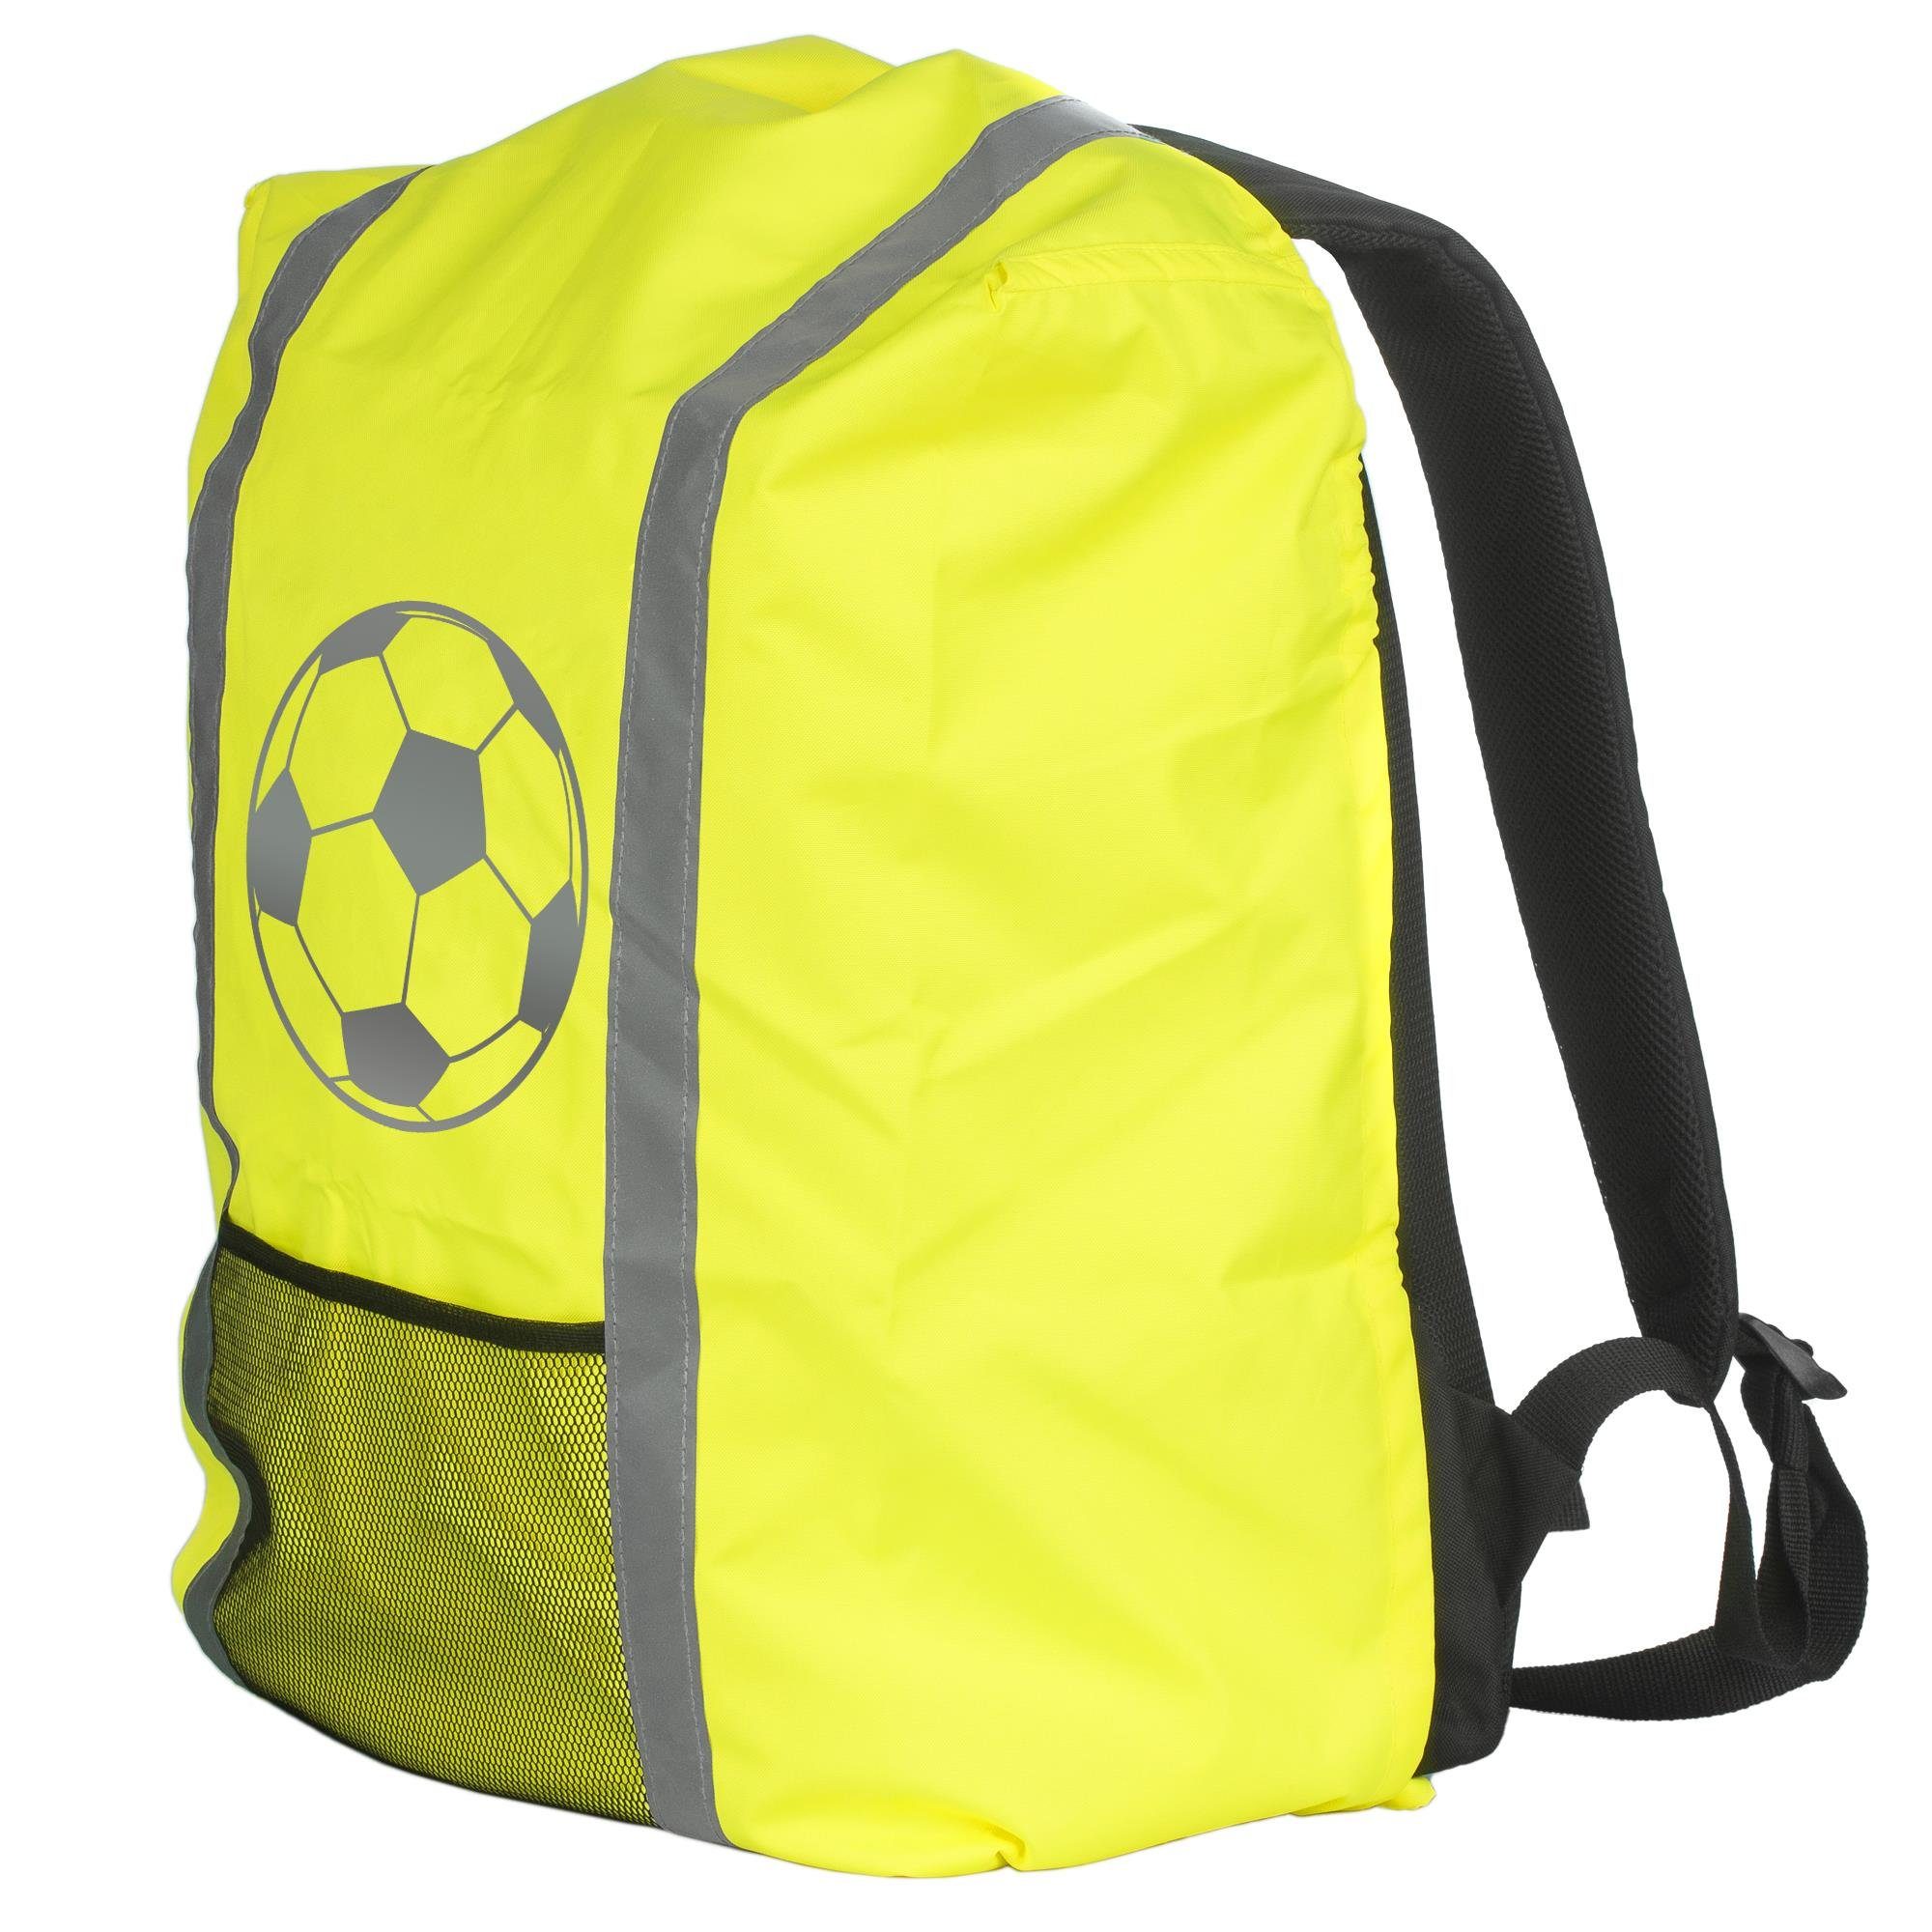 EAZY CASE Rucksack-Regenschutz Reflektor-Überzug Schutzhülle Fußball,  Regenschutzhülle Tasche Reflektorstreifen Regenhülle Fußball Gelb